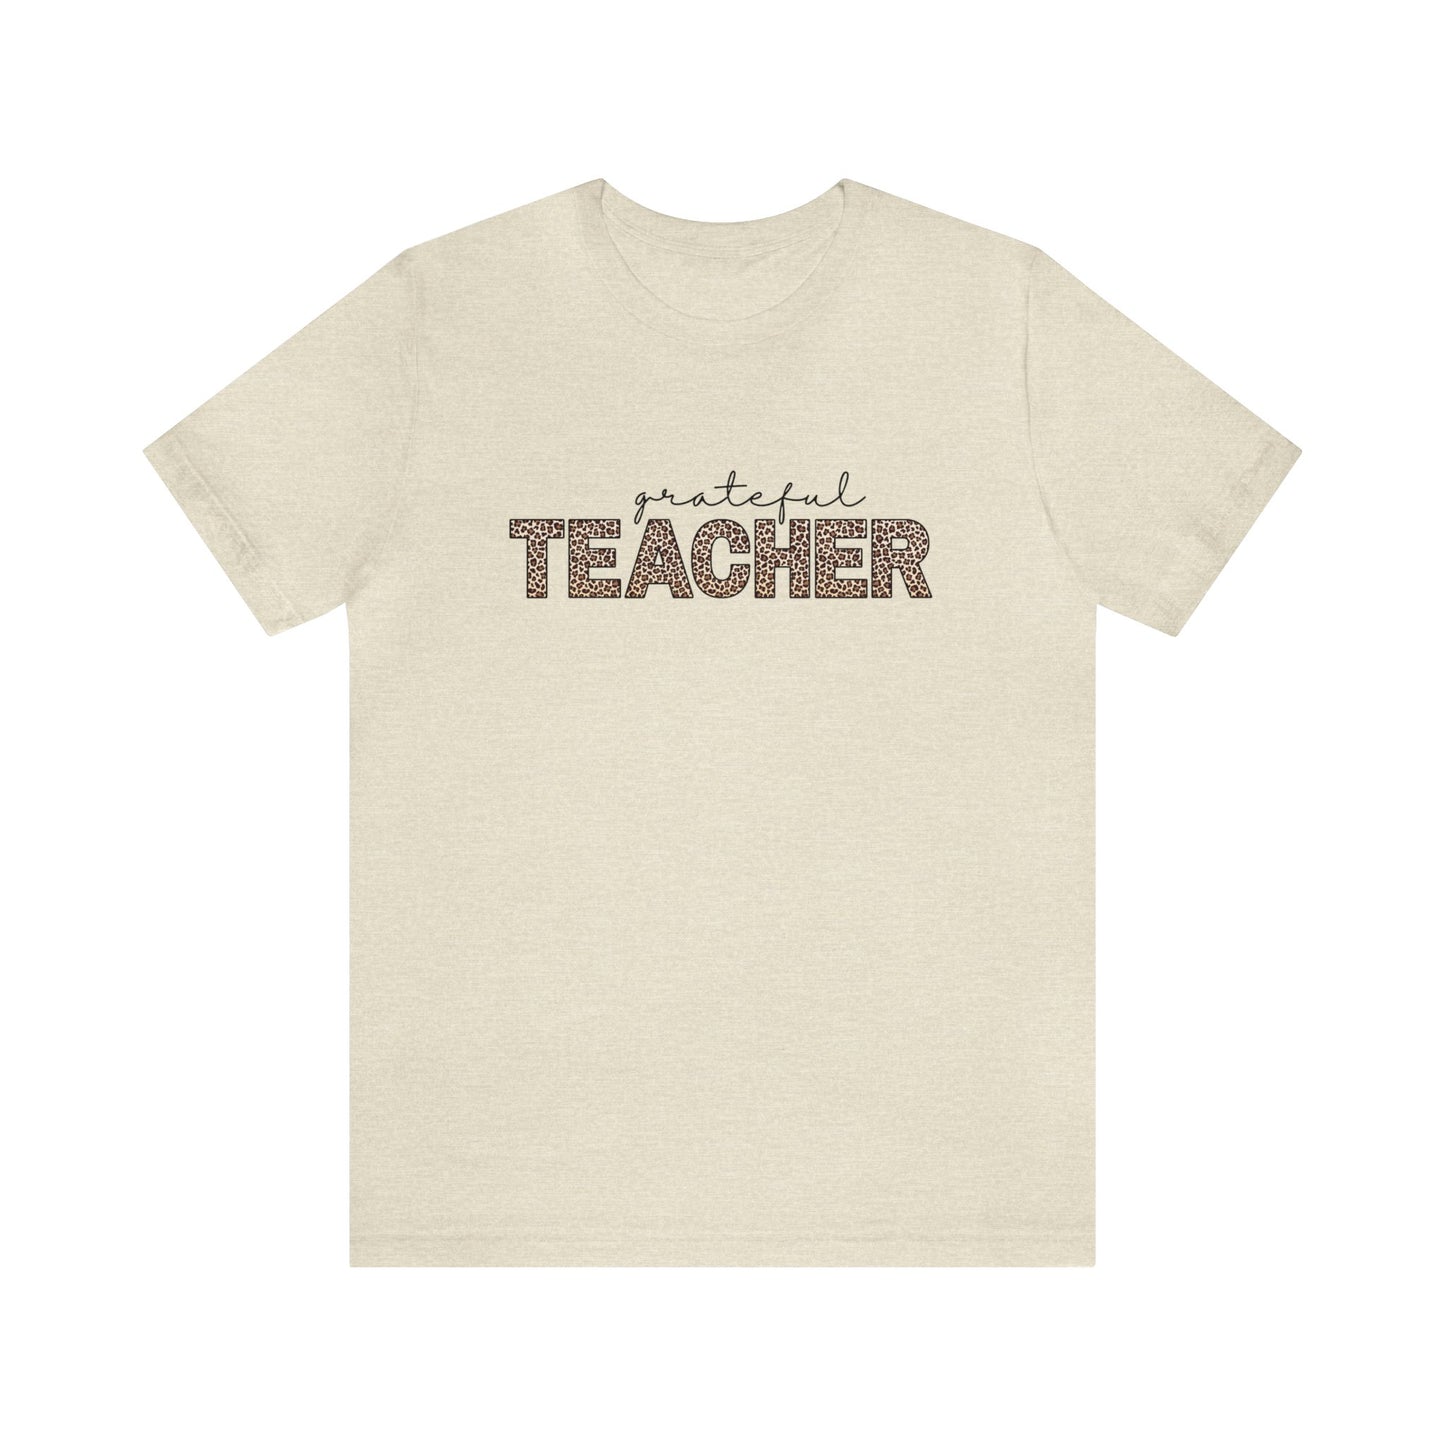 "Grateful Teacher" Teacher T-shirt